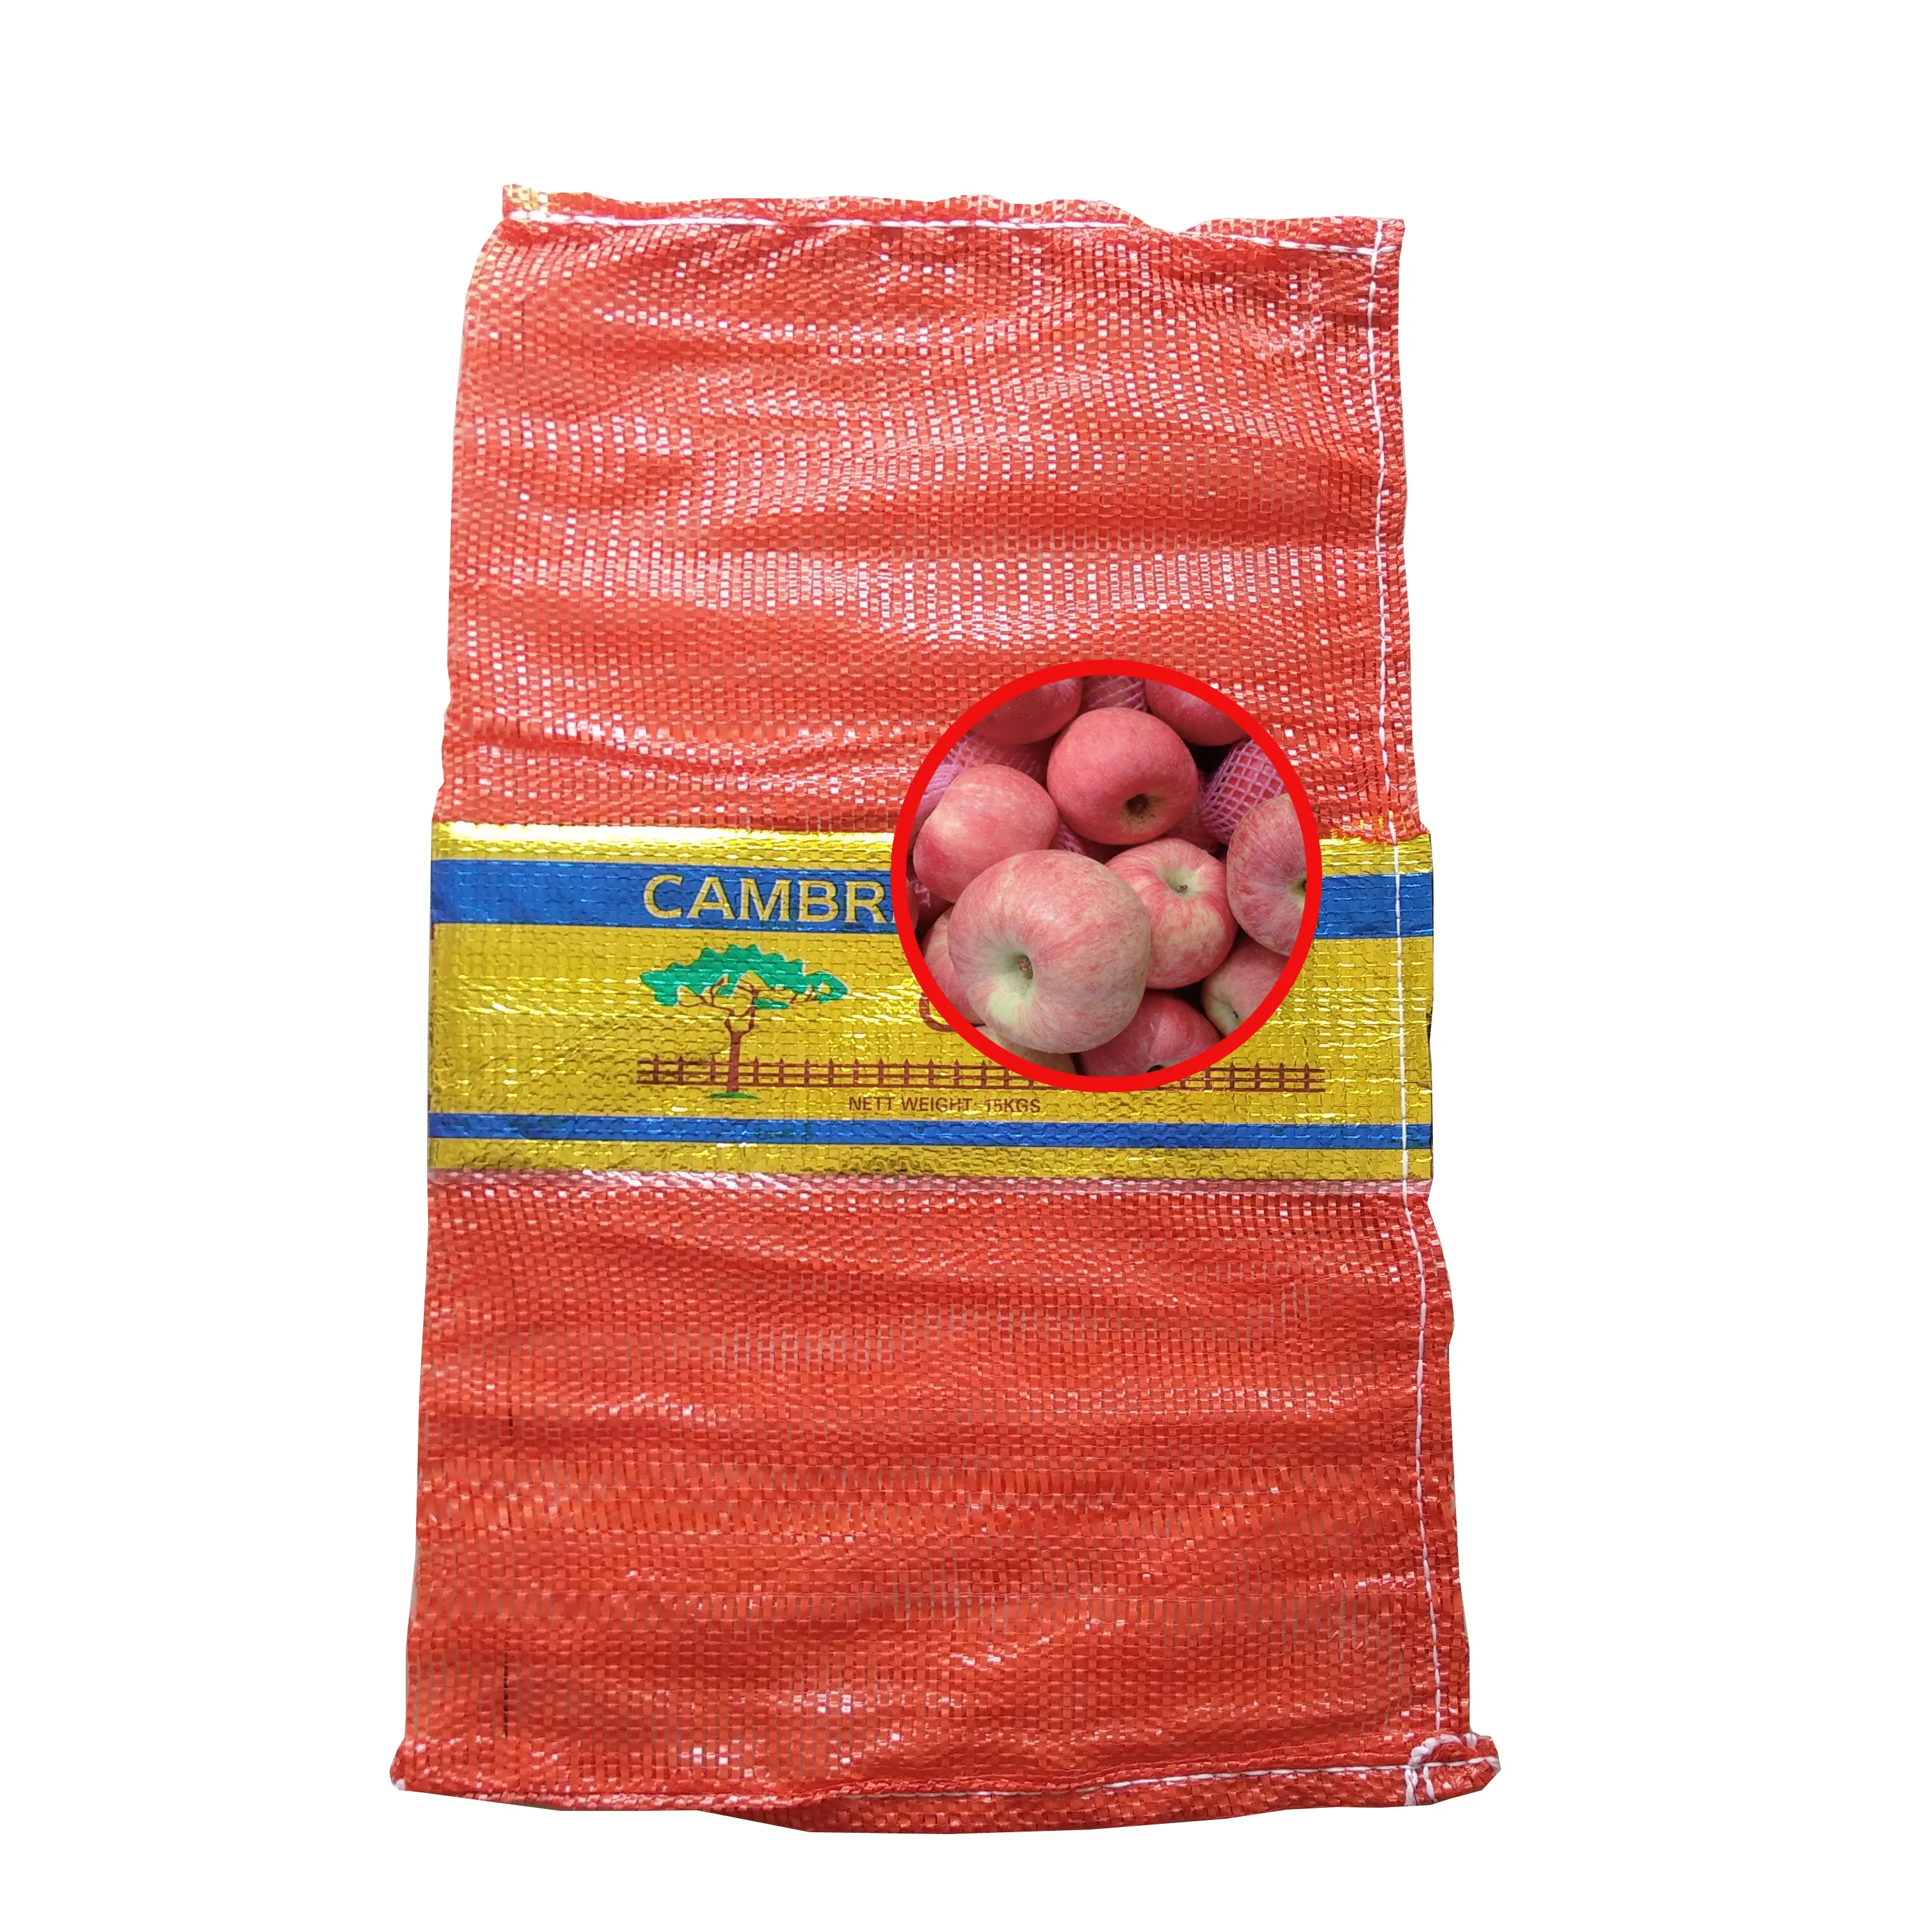 Toptan UV işlem görmüş yüksek kaliteli 20 kg soğan pp leno örgü çanta